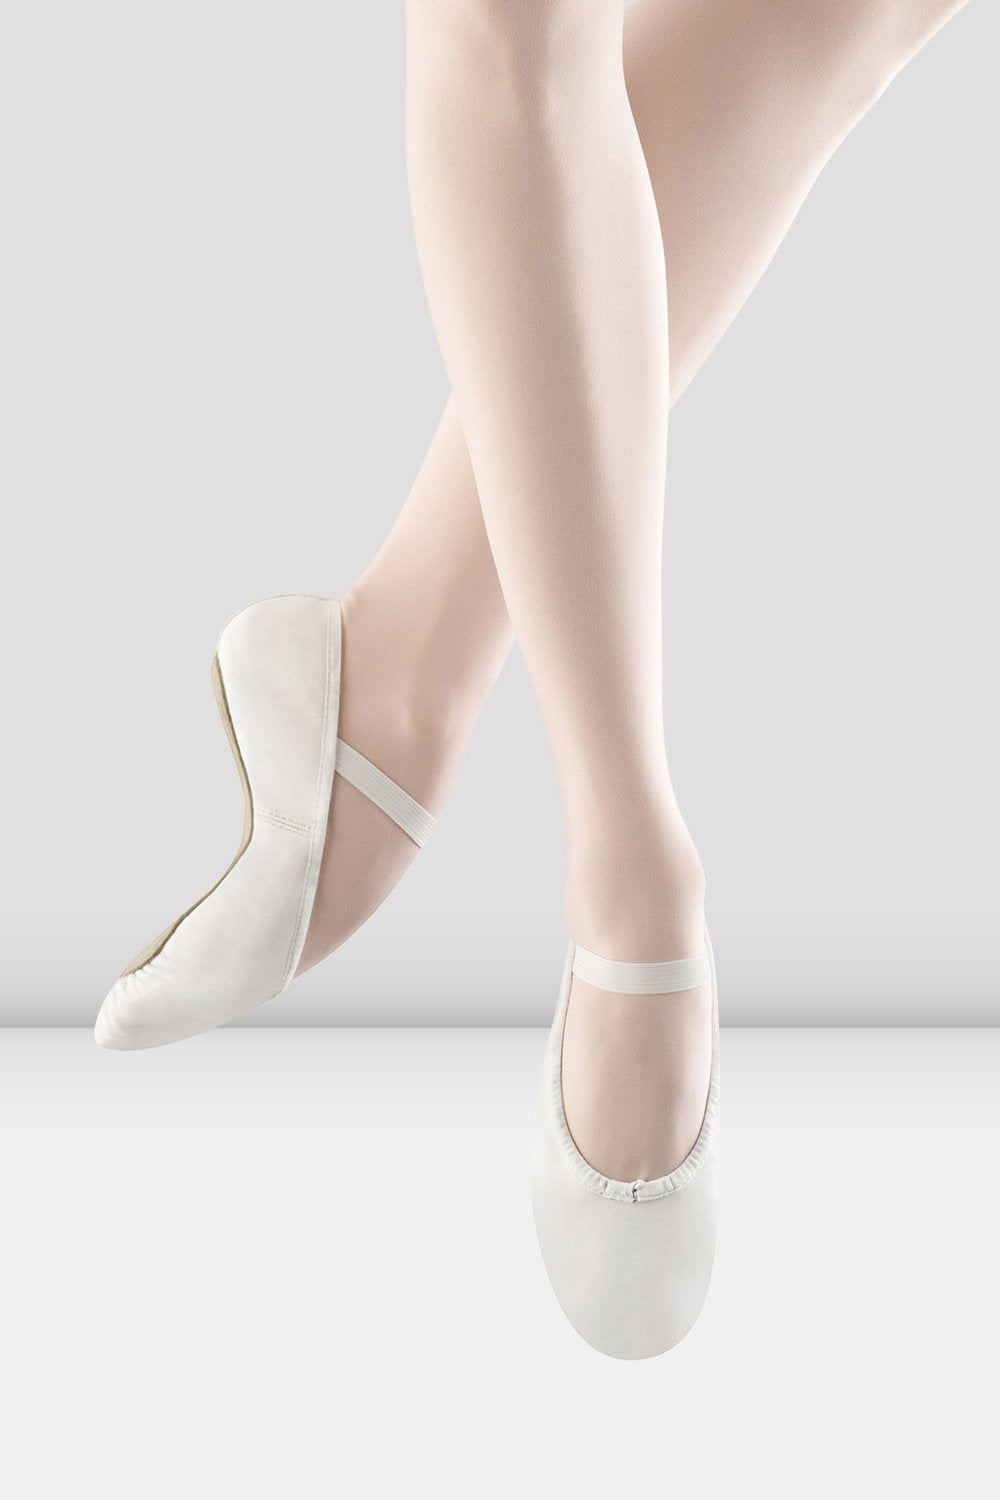 Økologi krigsskib kapillærer Ladies Dansoft Leather Ballet Shoes, White – BLOCH Dance US